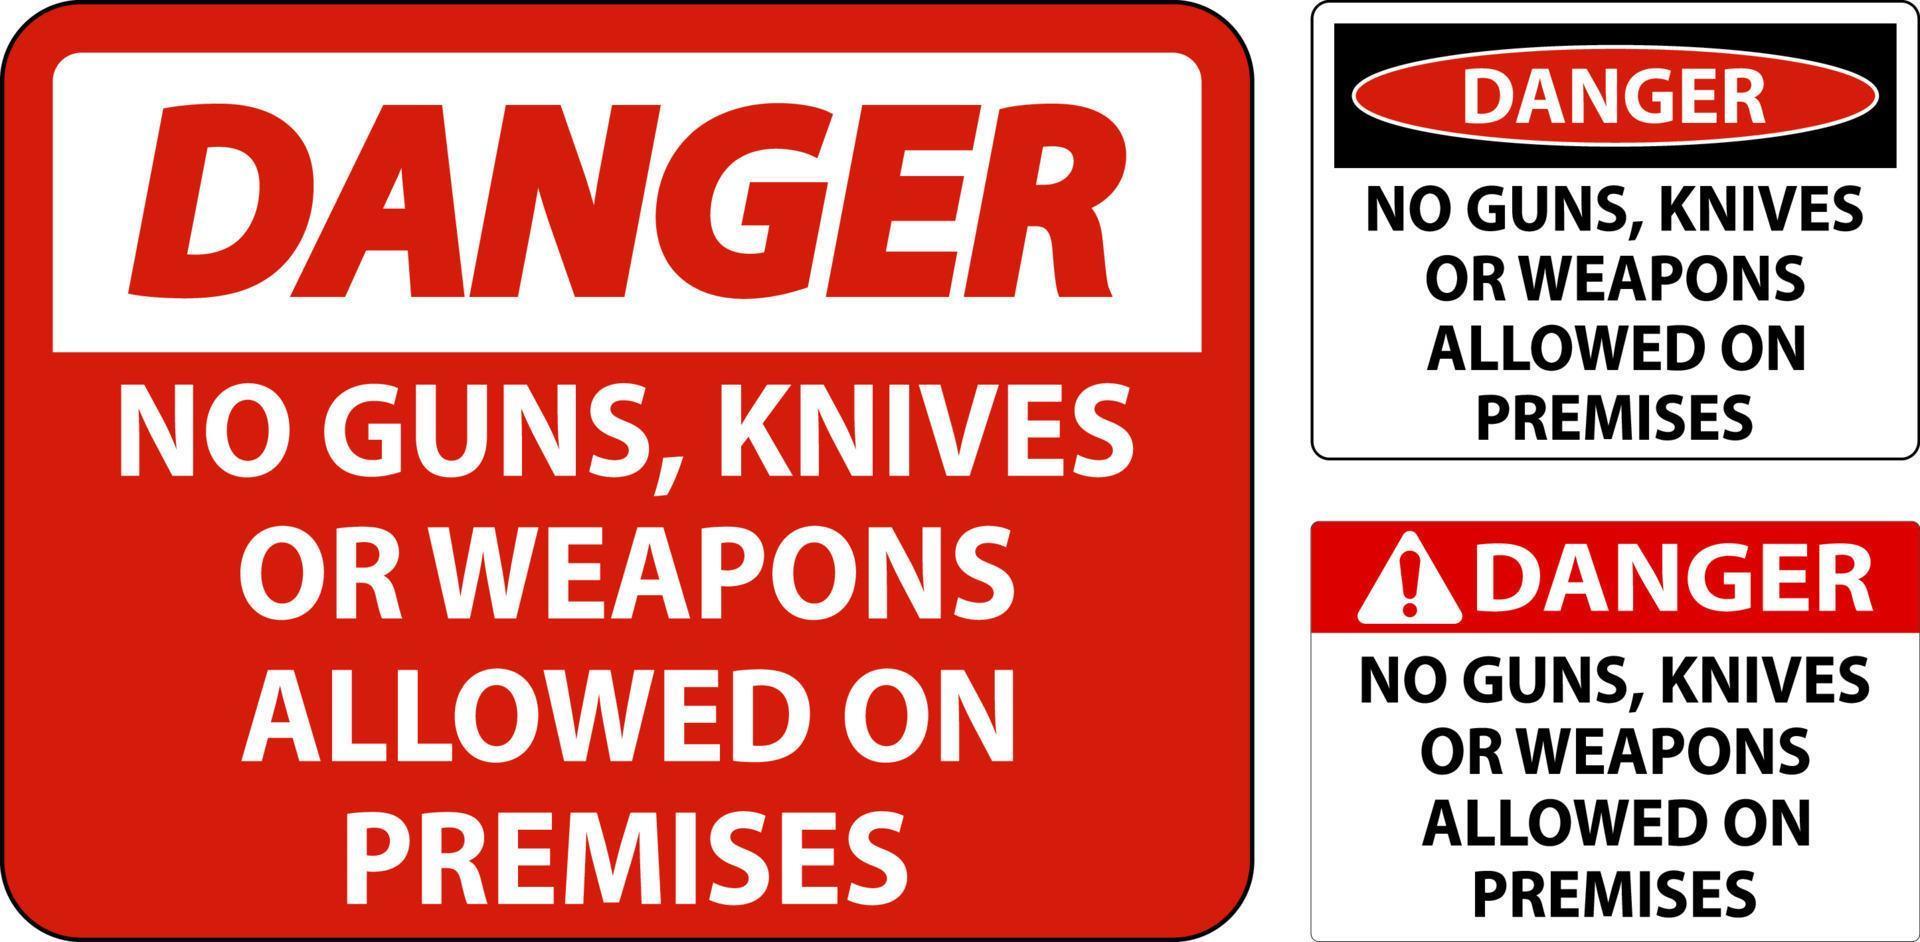 las reglas de las armas de peligro firman que no se permiten pistolas, cuchillos o armas en las instalaciones vector